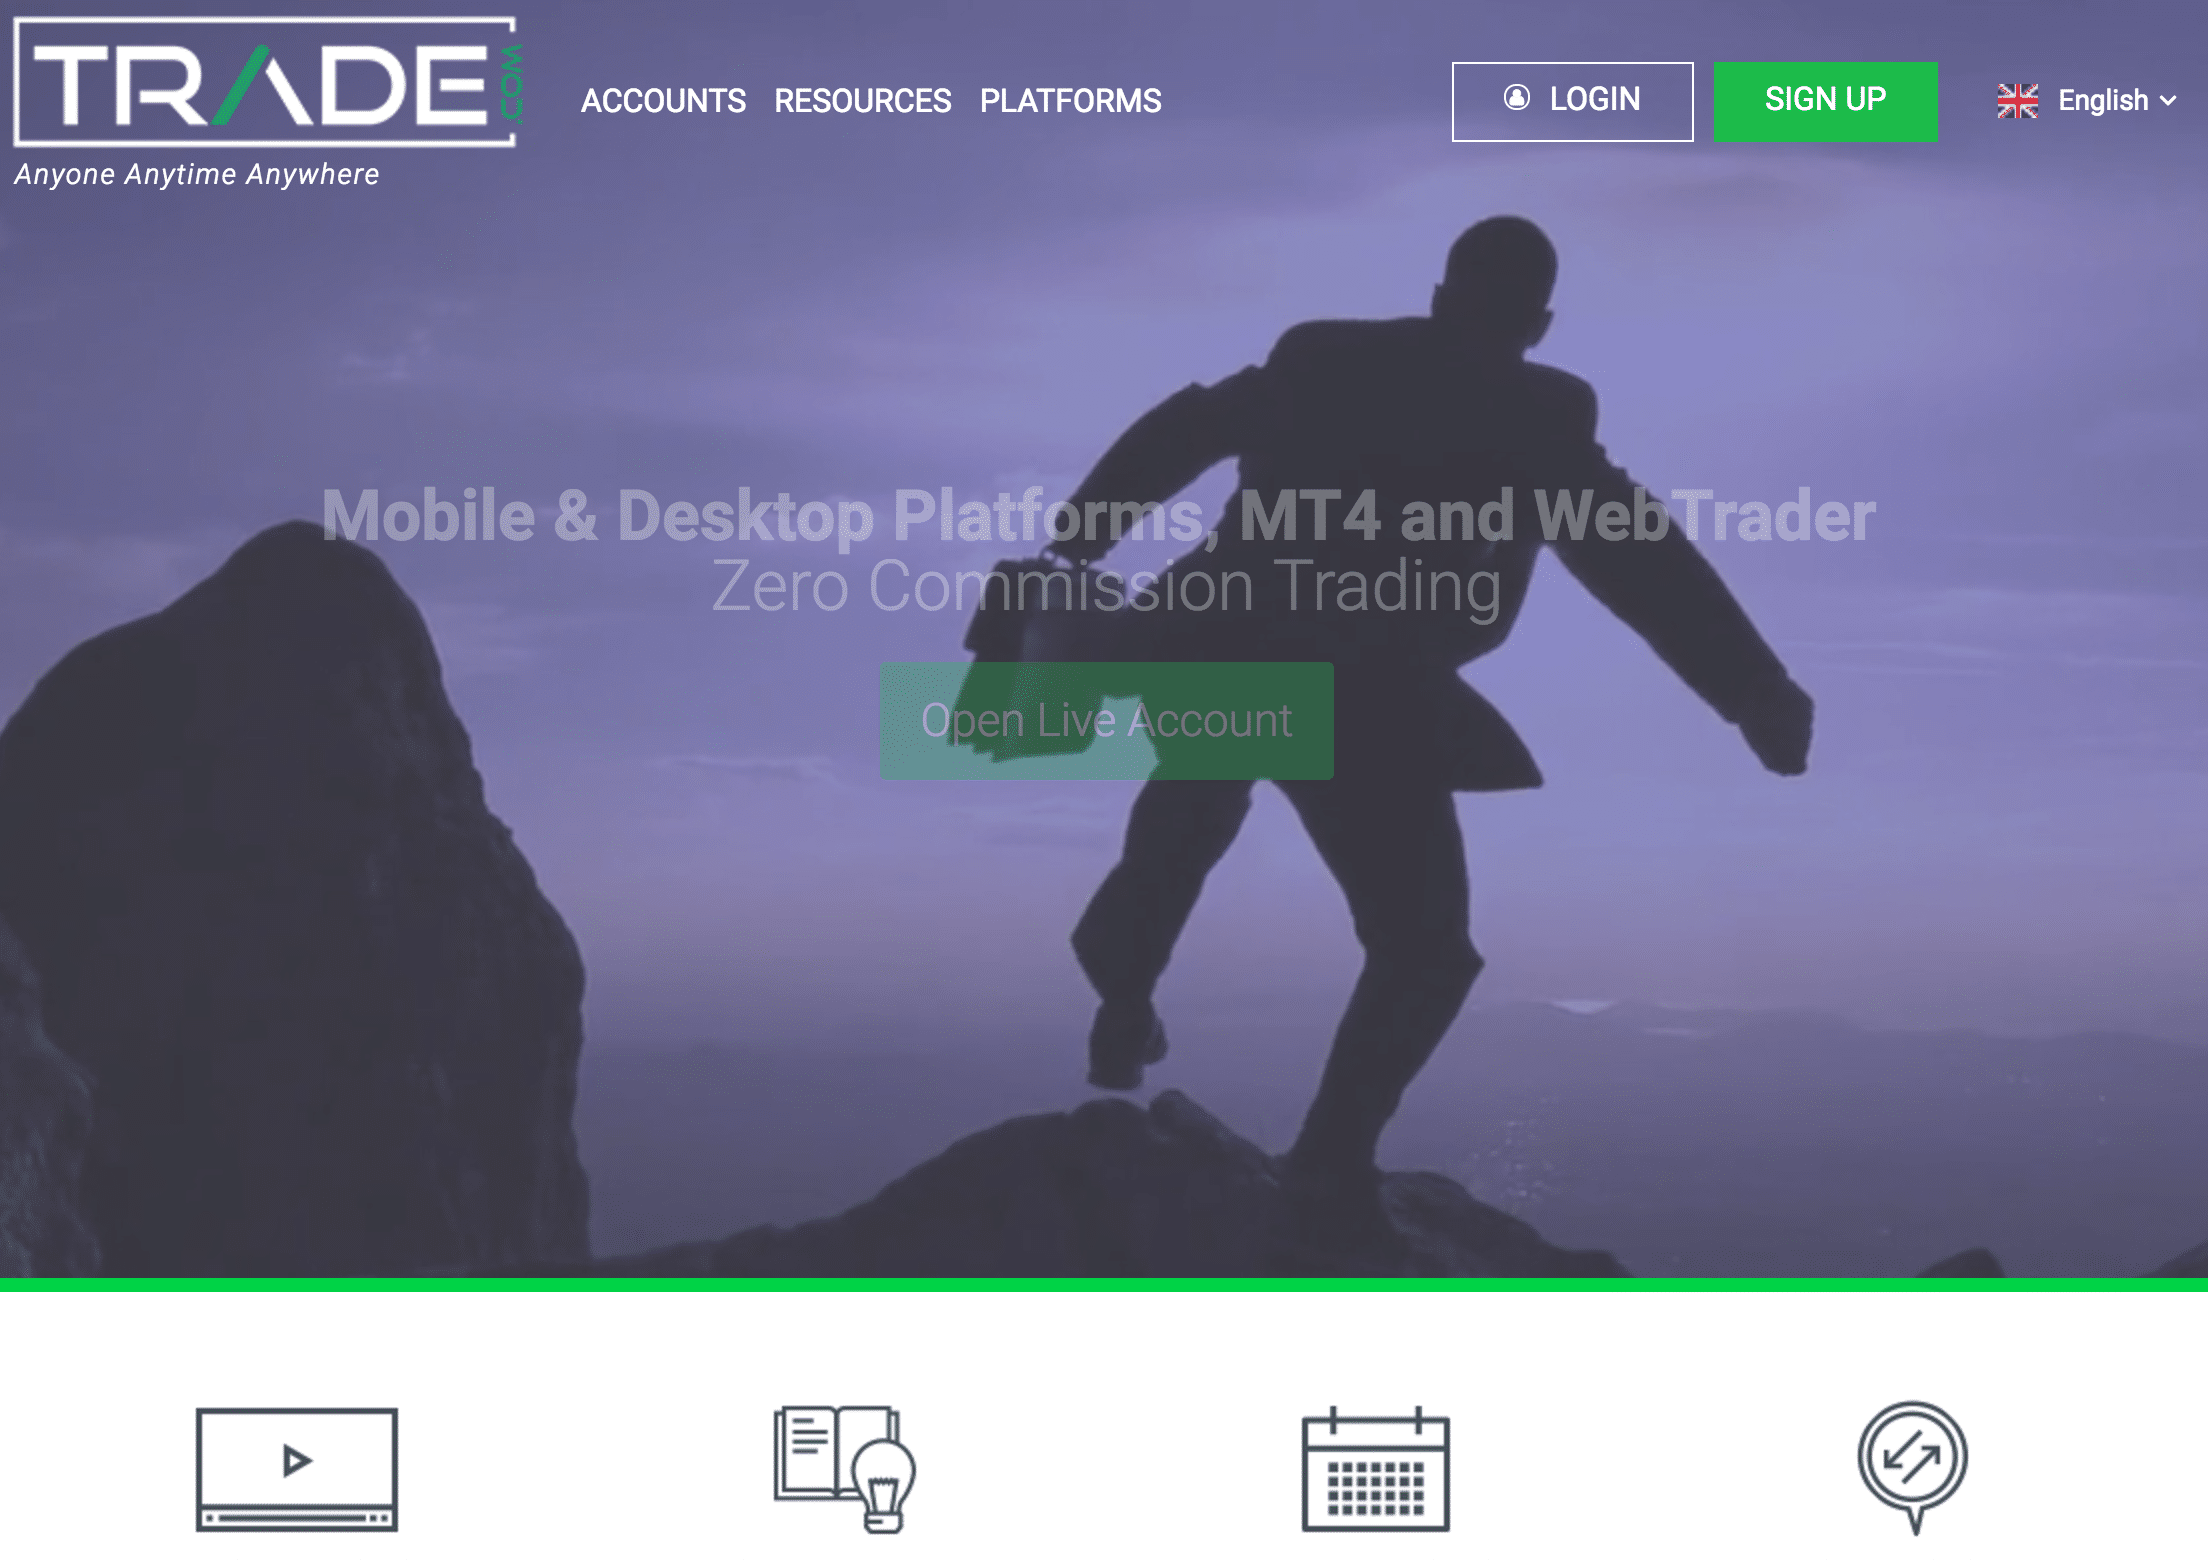 Trade.com Website